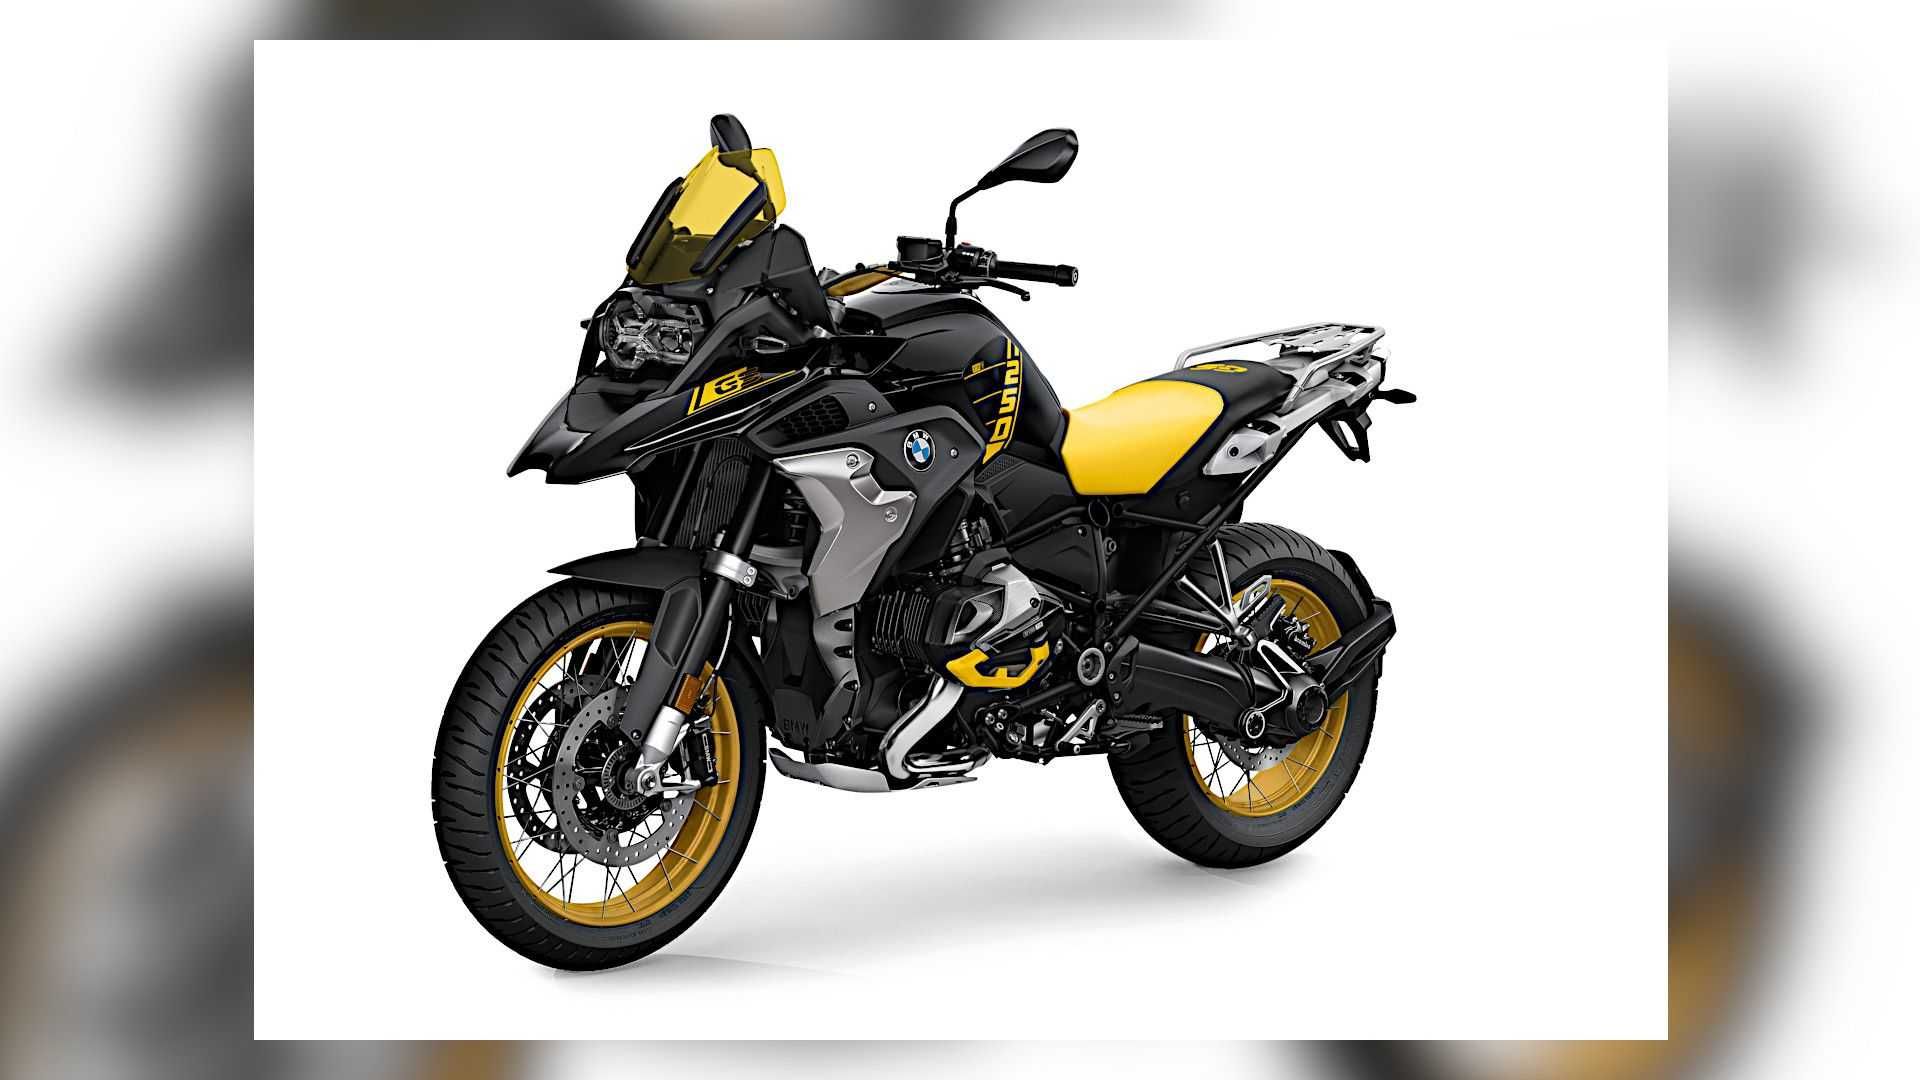 نمای جلو موتورسیکلت بی ام و / 2021 BMW R 1250 GS با رنگ زرد و سیاه